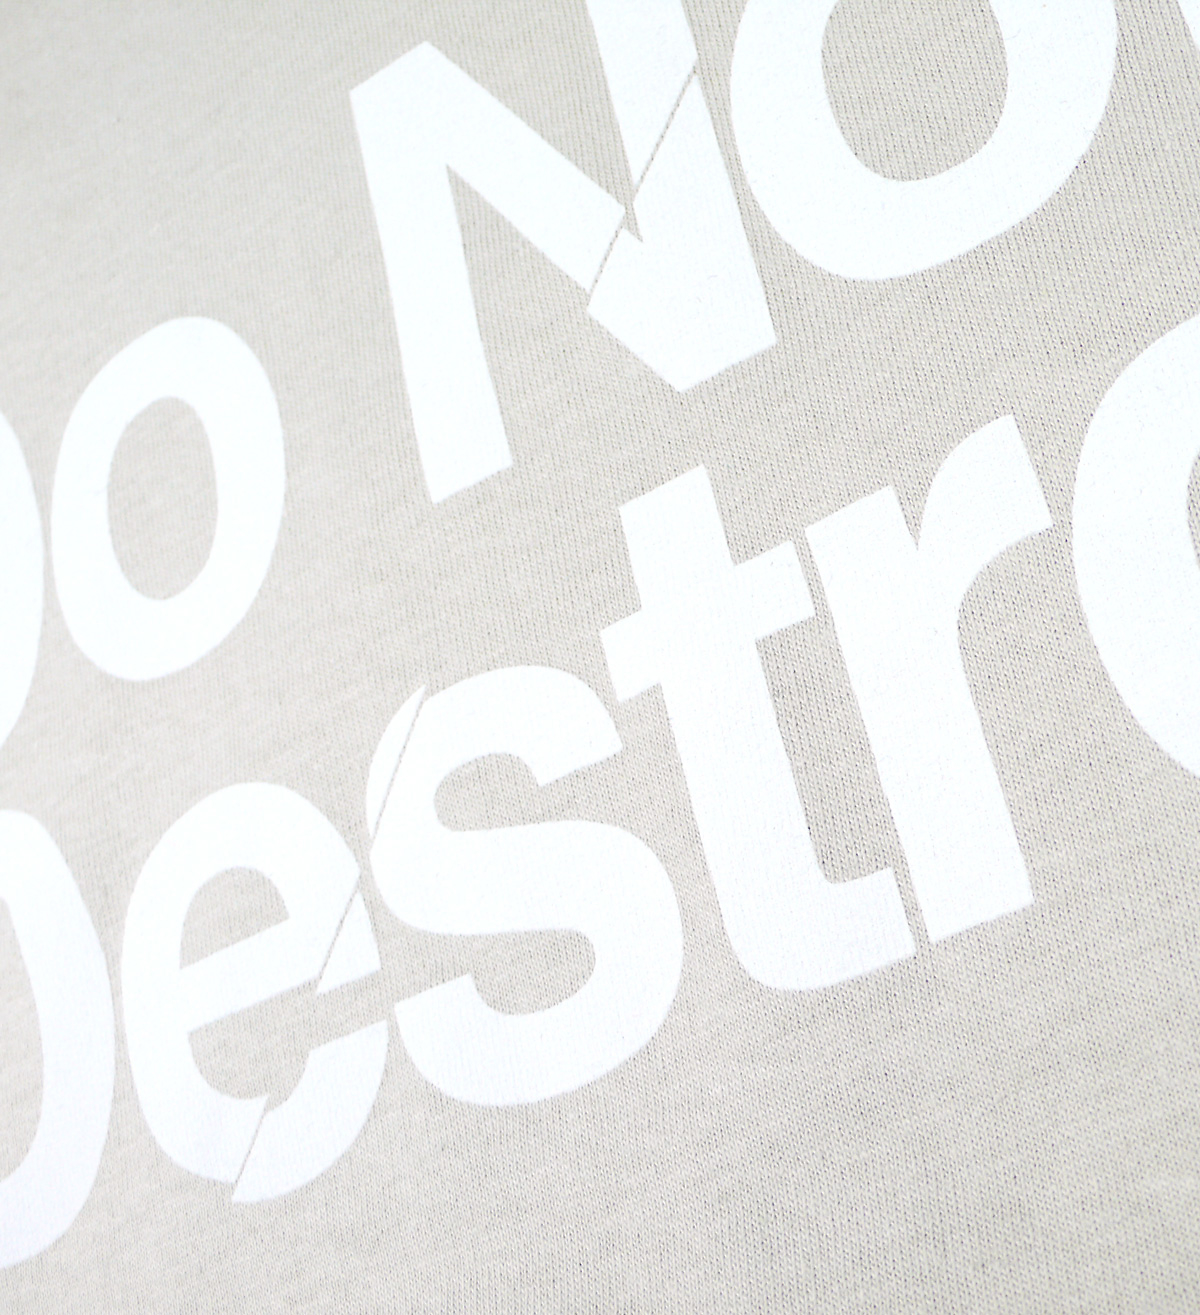 Do Not Destroy Sand t-shirt tee